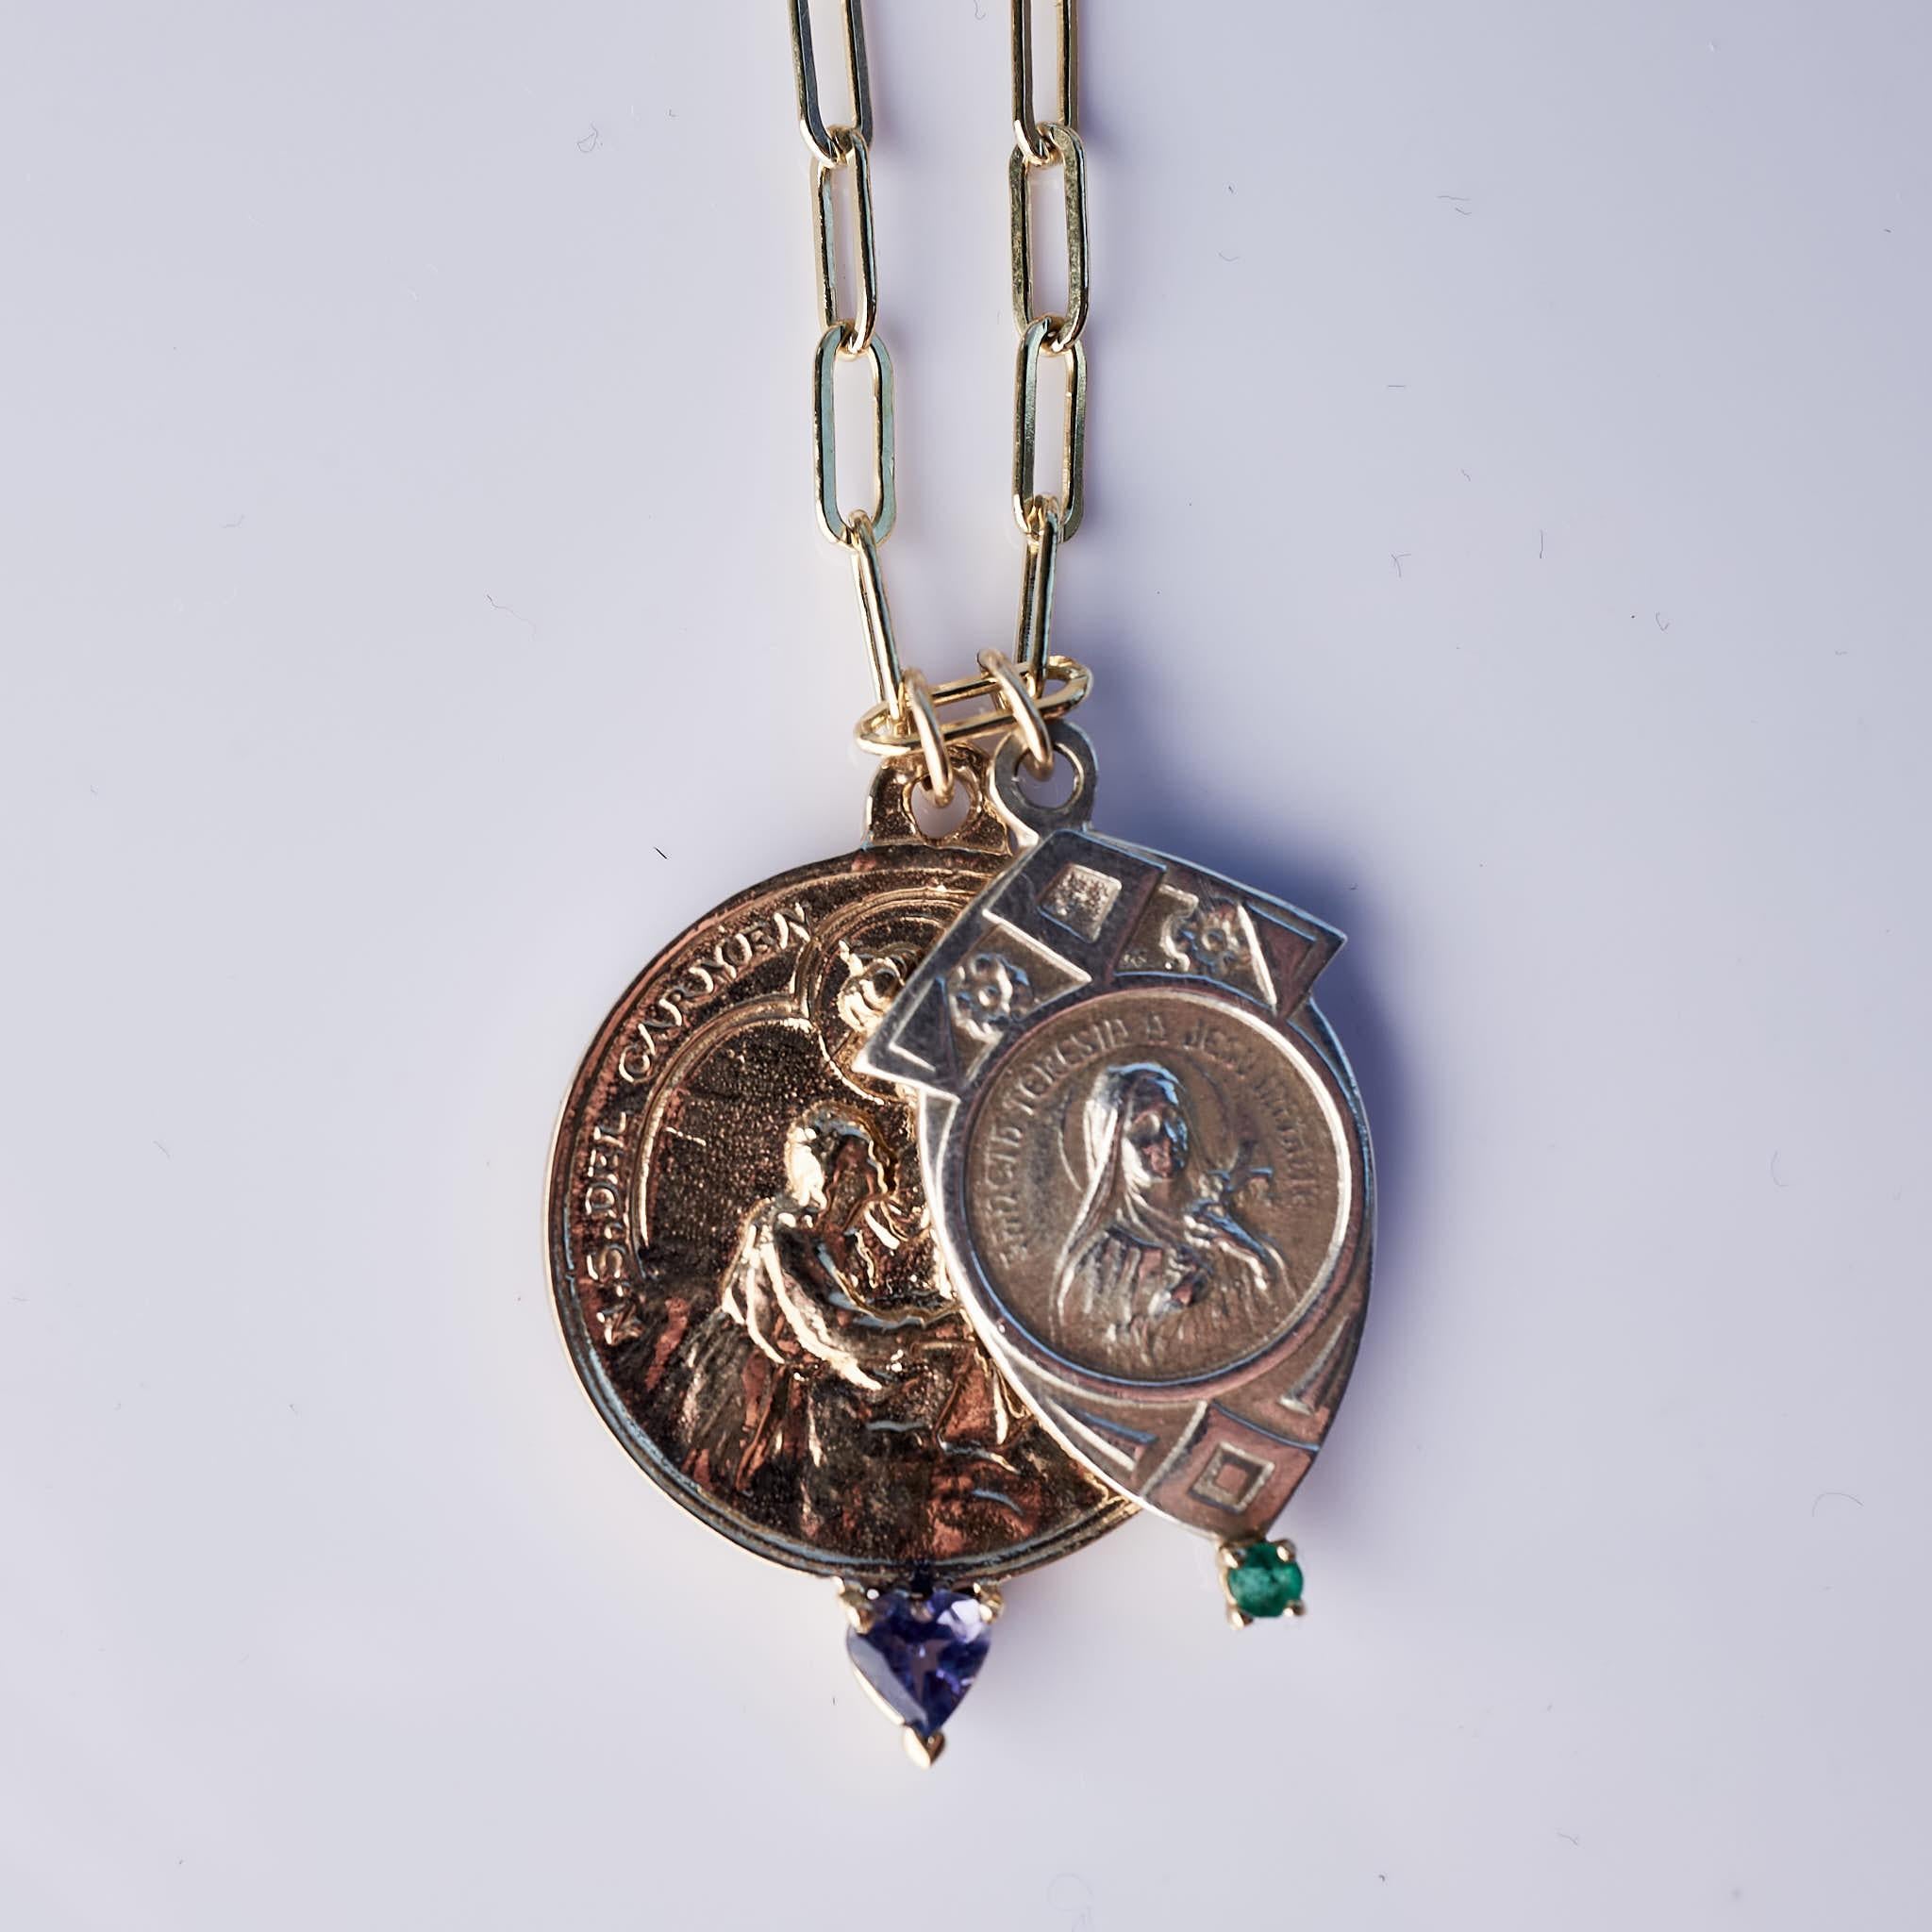 Ce collier à double médailles, composé de deux médailles de la Vierge Marie, est suspendu à une chaîne remplie d'or. L'une des médailles est ronde en bronze et comporte une tanzanite en forme de cœur sertie d'or. L'autre médaille est en argent